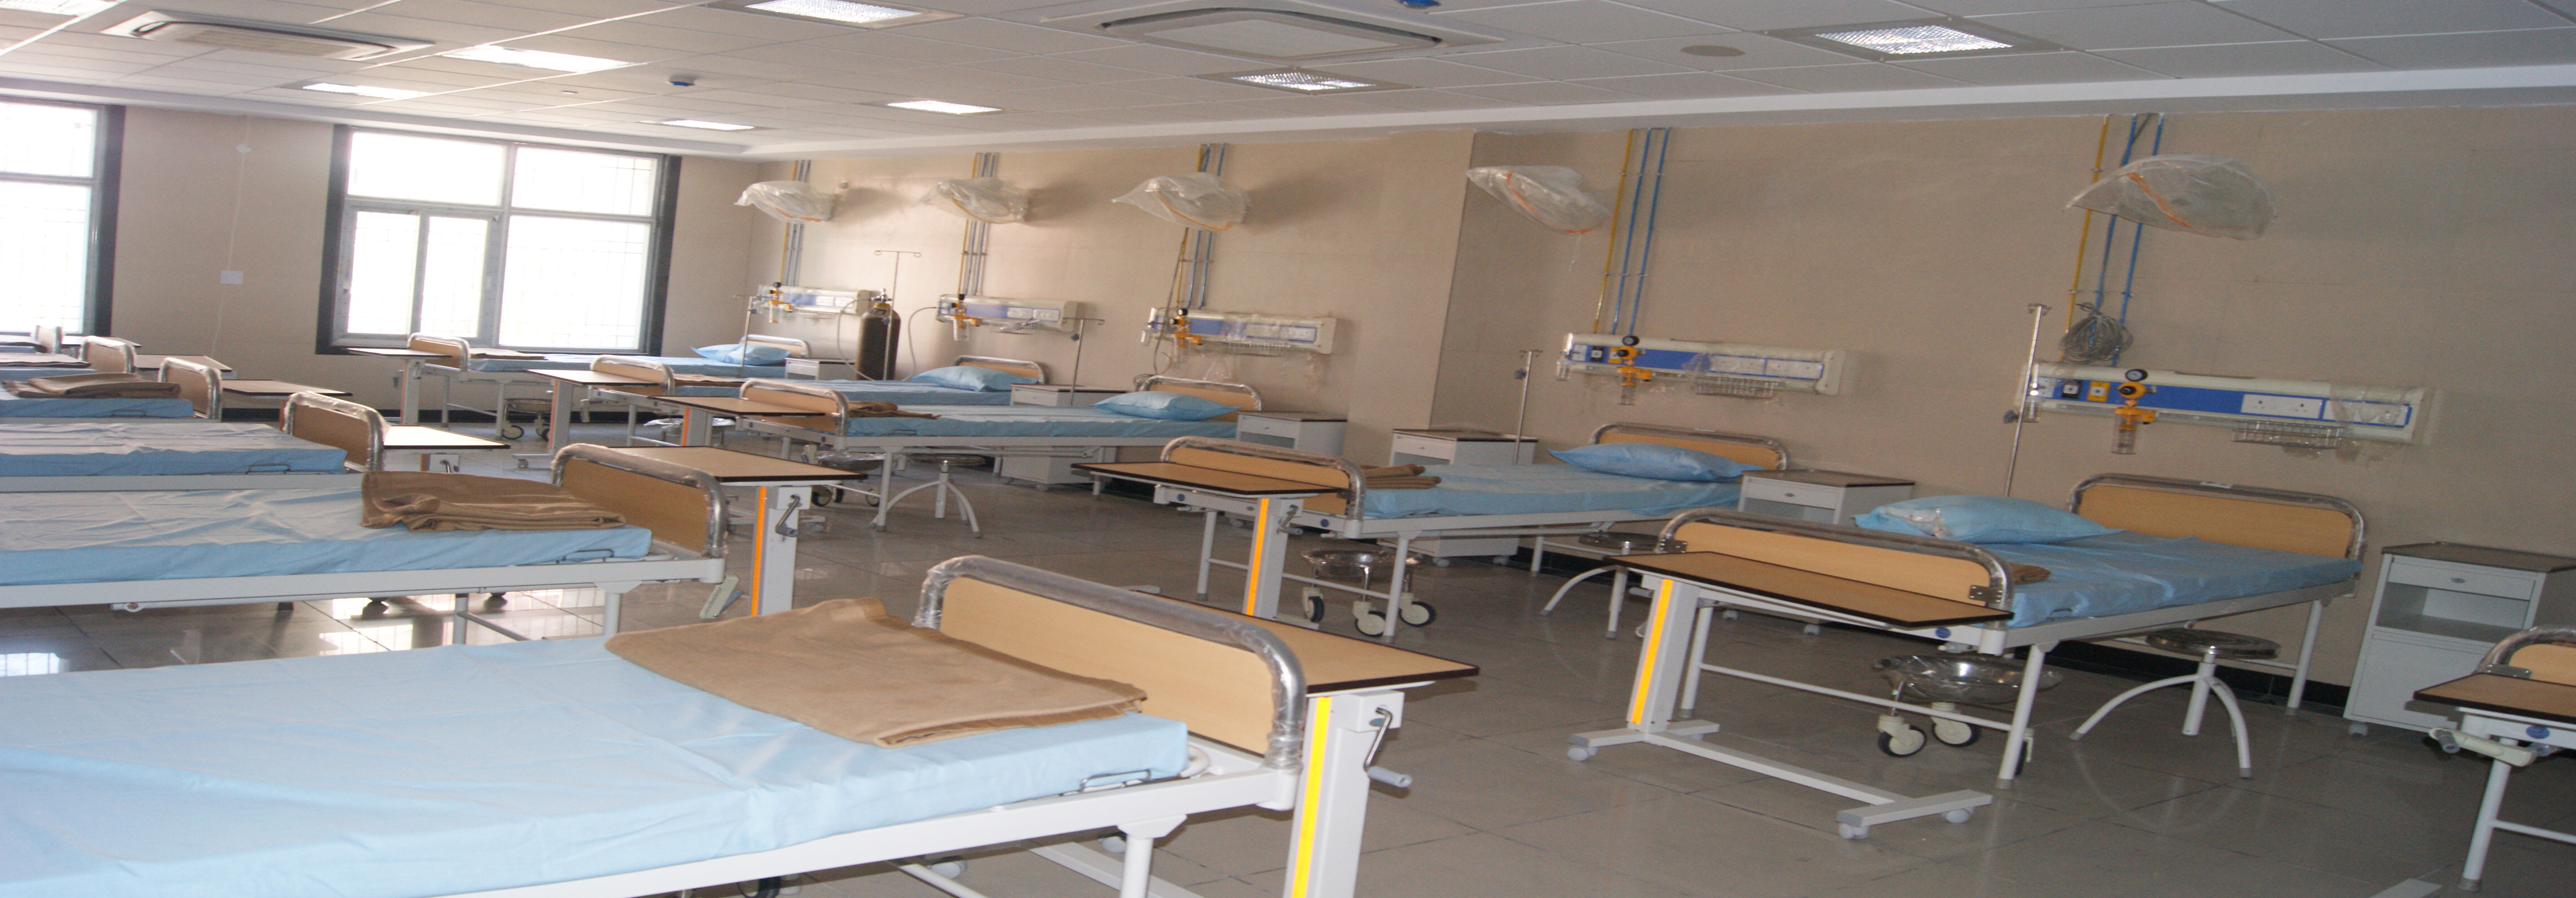 LLRM-Medical-College-Meerut_Hospital_bed